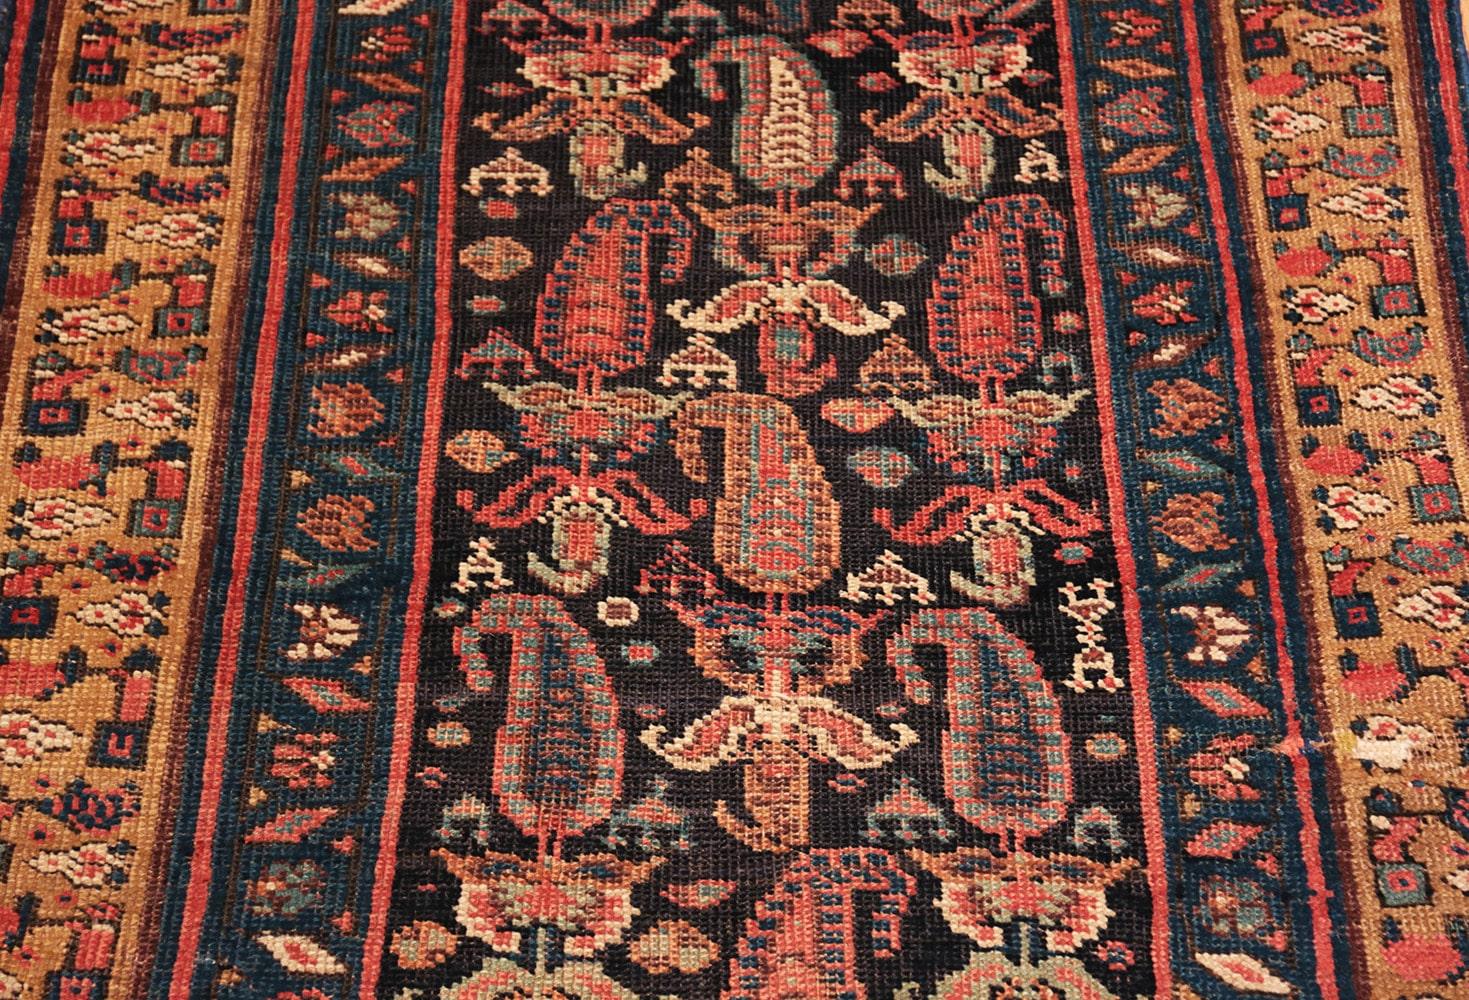 Hand-Knotted Antique Bidjar Persian Runner. Size: 3' 2